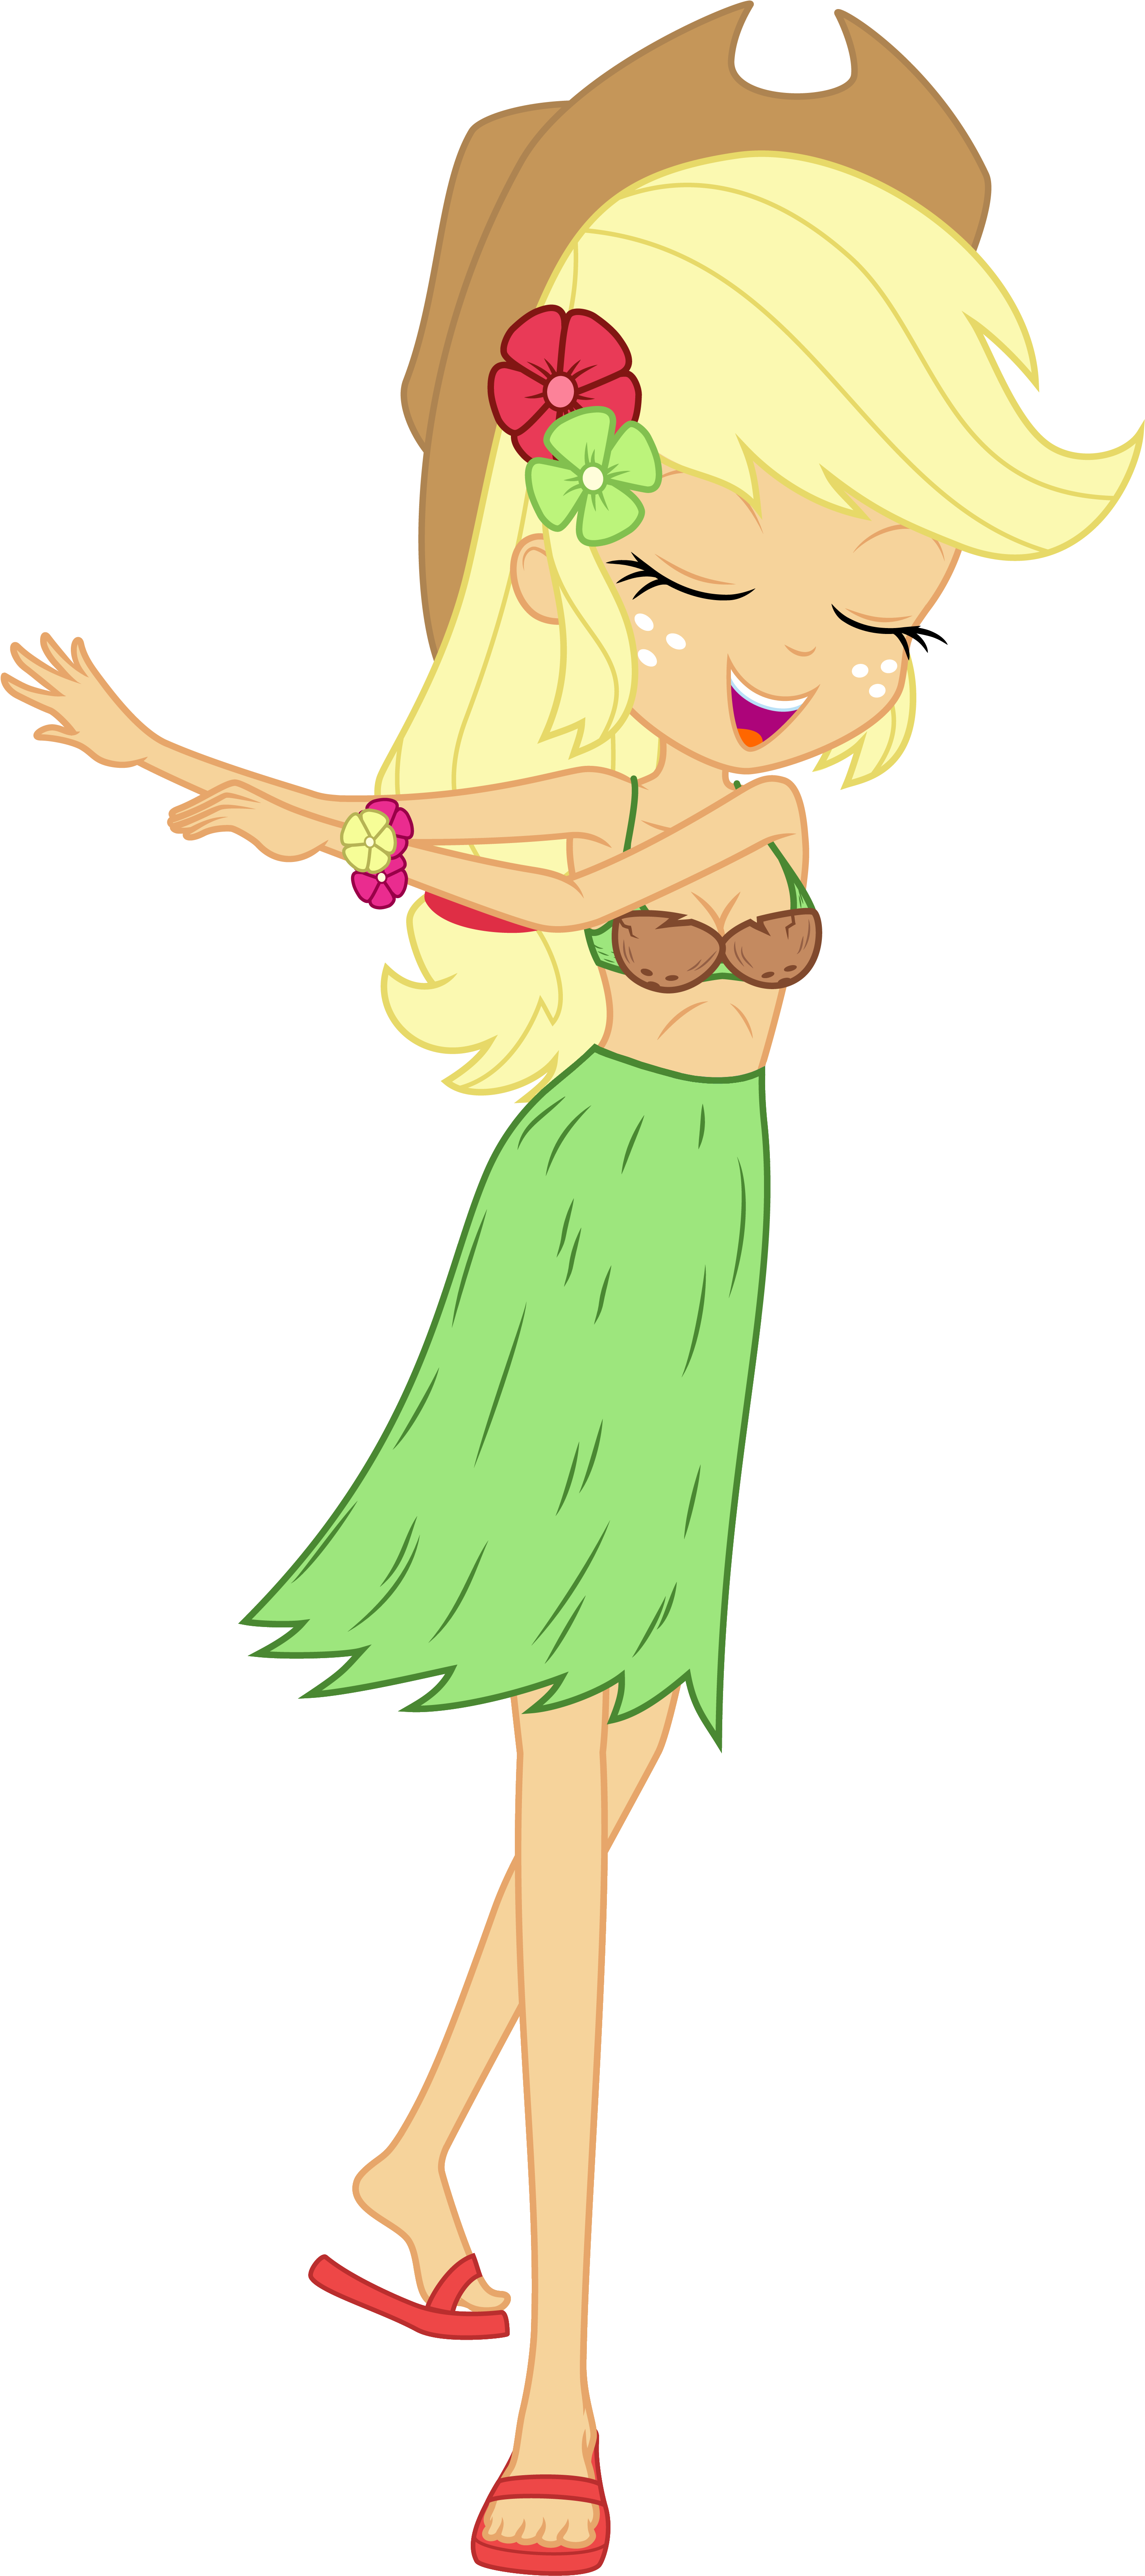 Animated Hula Girl Dancing PNG image